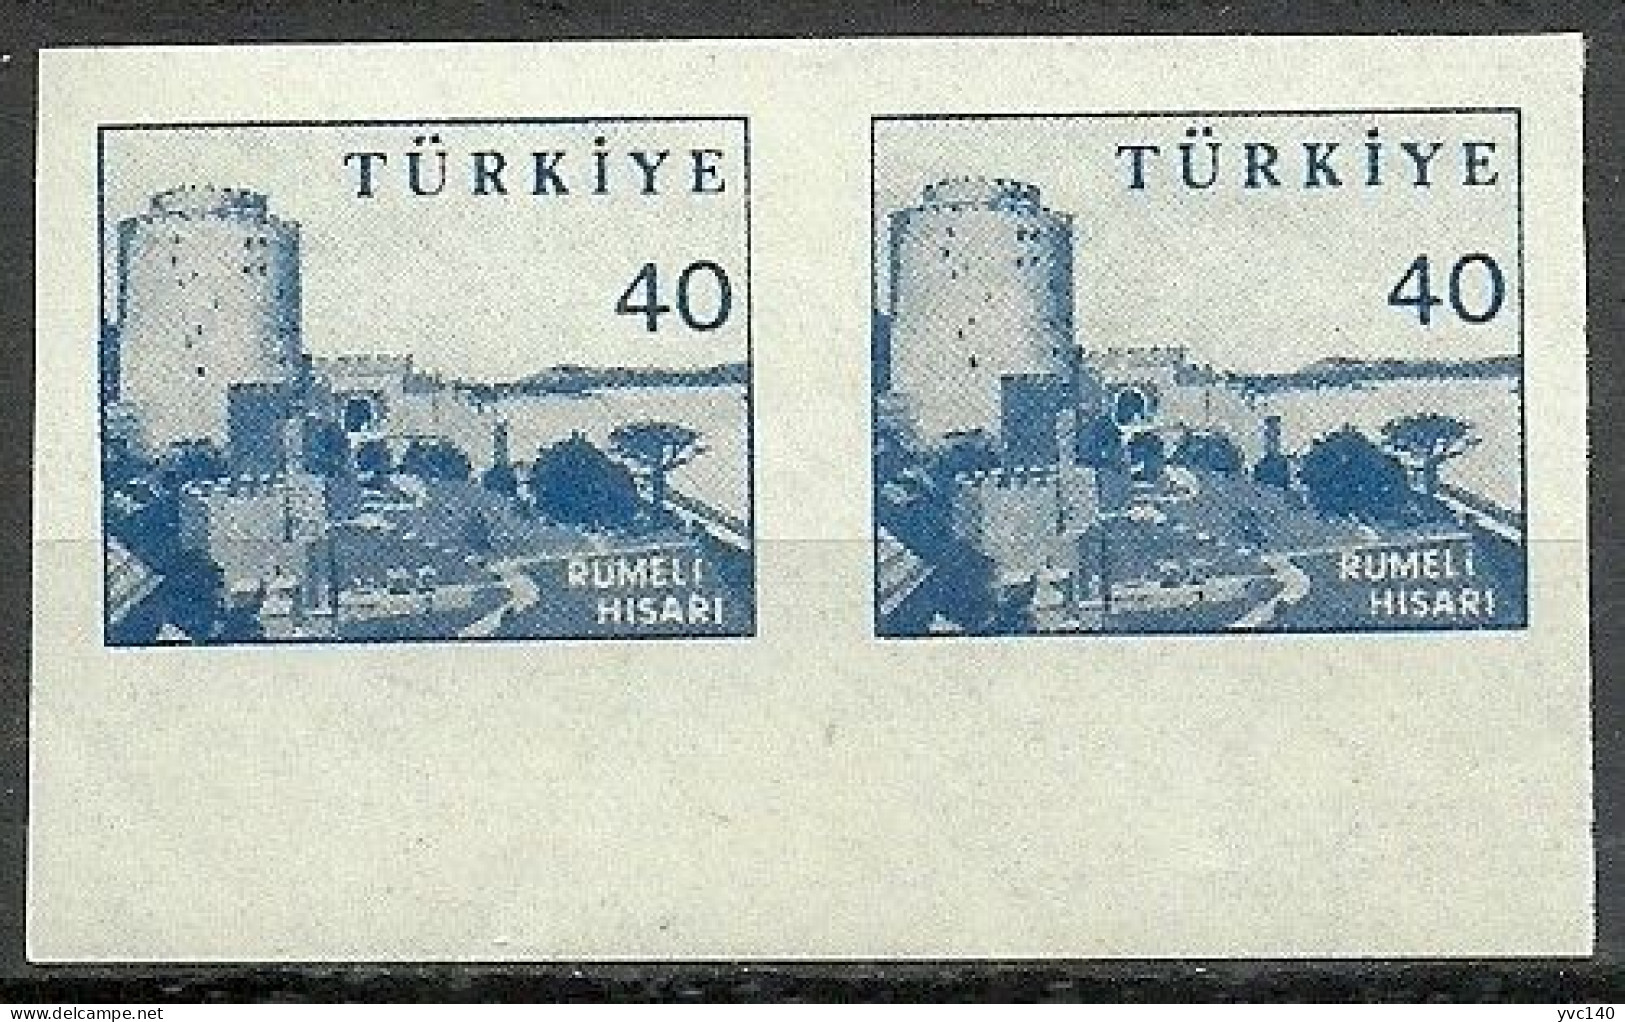 Turkey; 1959 Pictorial Postage Stamp 40 K. ERROR "Imperf. Pair" - Unused Stamps